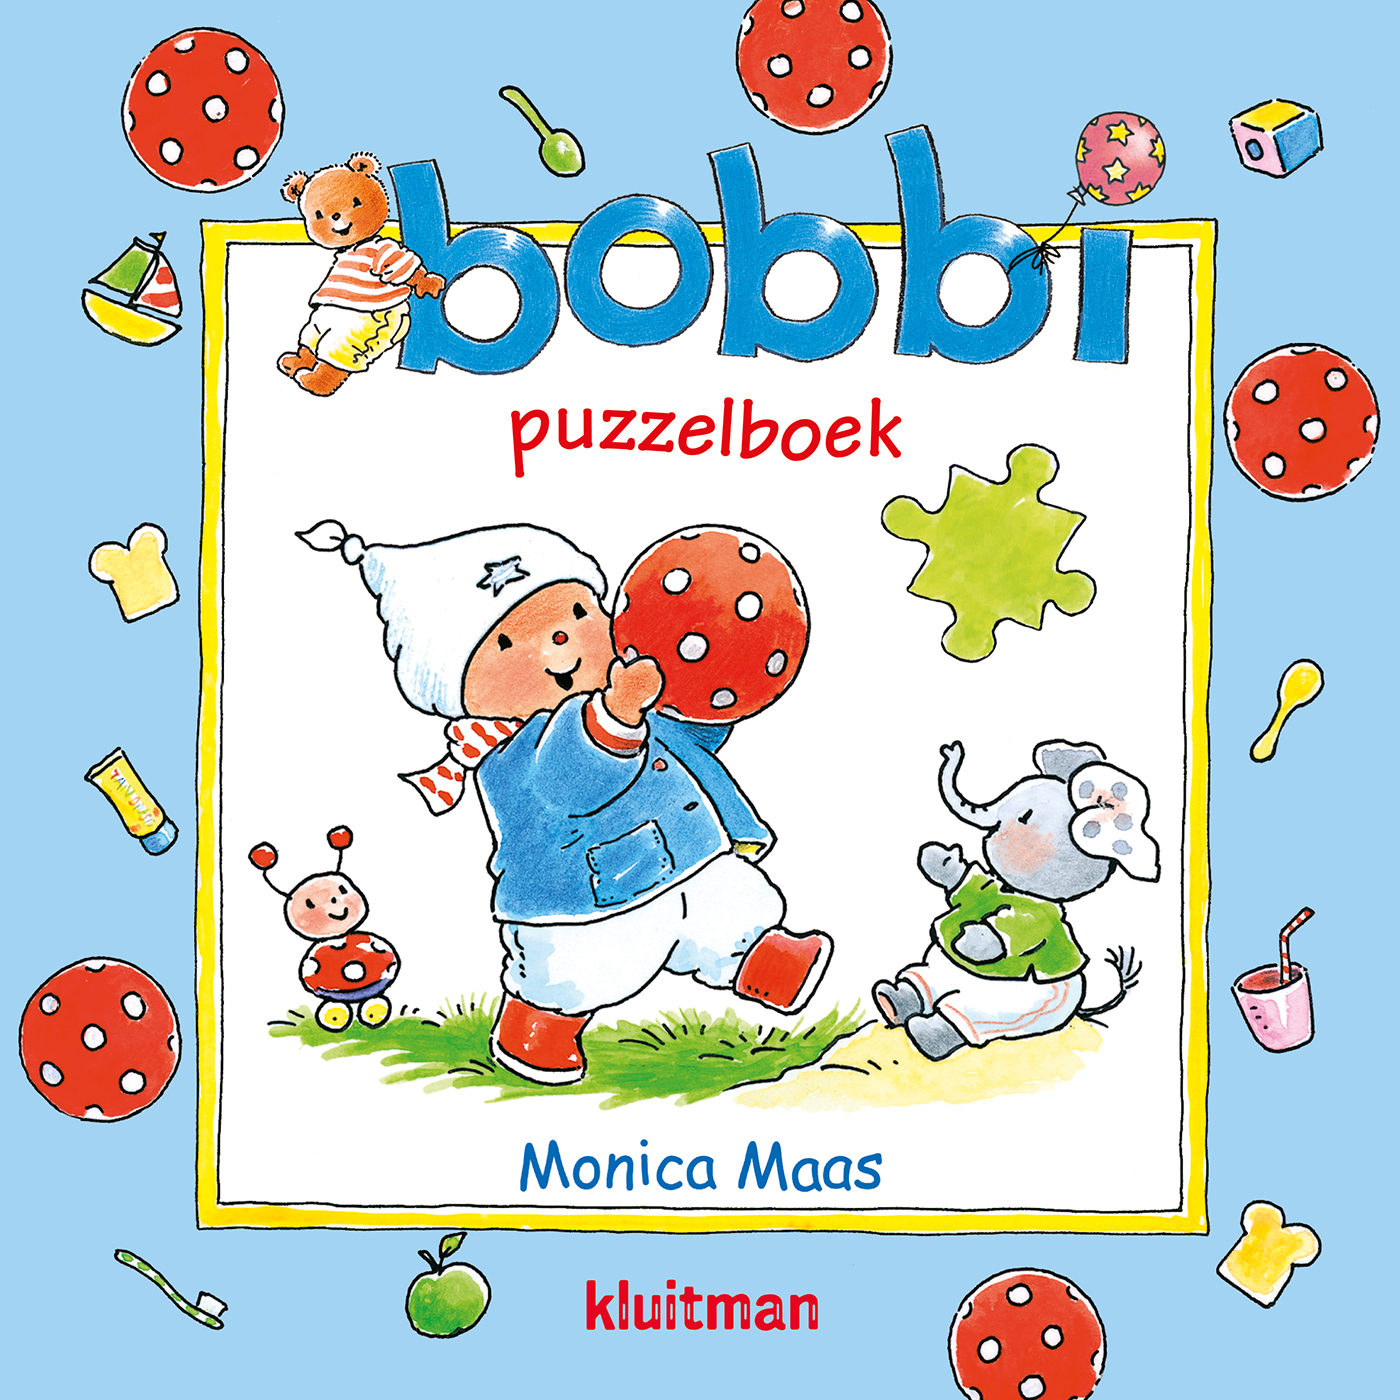 Verouderd Beoefend retort Bobbi puzzelboek - Bobbi kinderboeken - Vrolijke boeken voor peuters